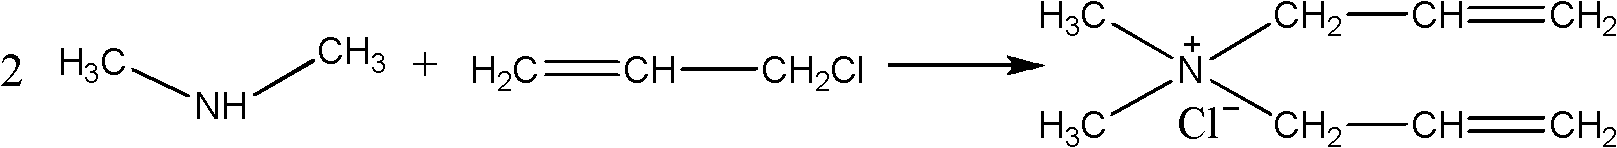 Method for synthesizing dimethyl diallyl ammonium chloride cationic monomer